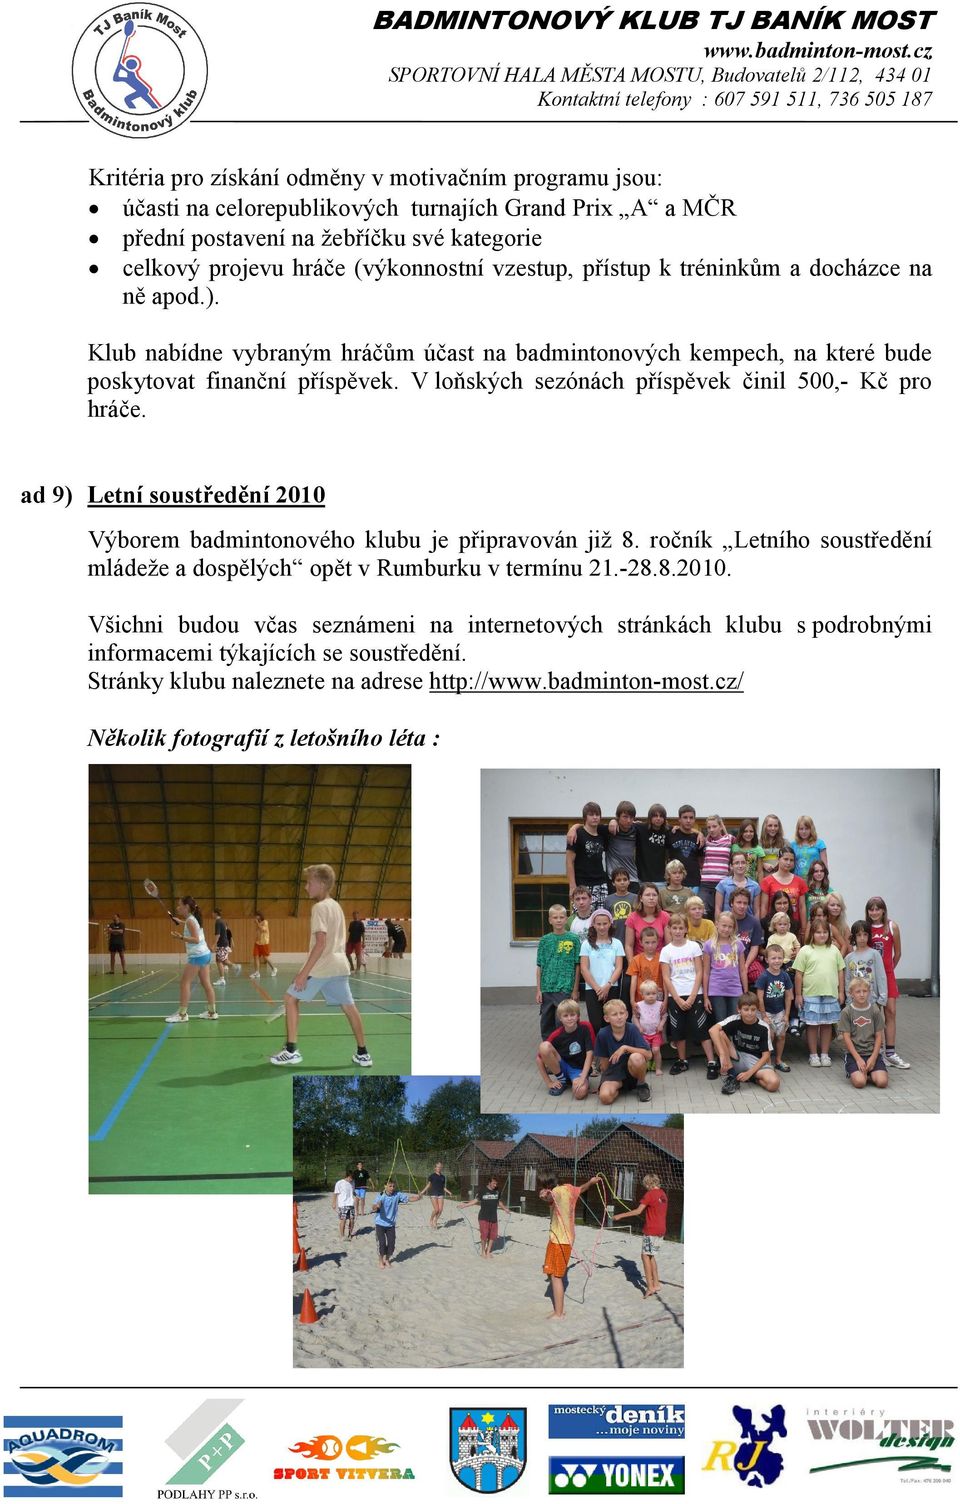 V loňských sezónách příspěvek činil 500,- Kč pro hráče. ad 9) Letní soustředění 2010 Výborem badmintonového klubu je připravován již 8.